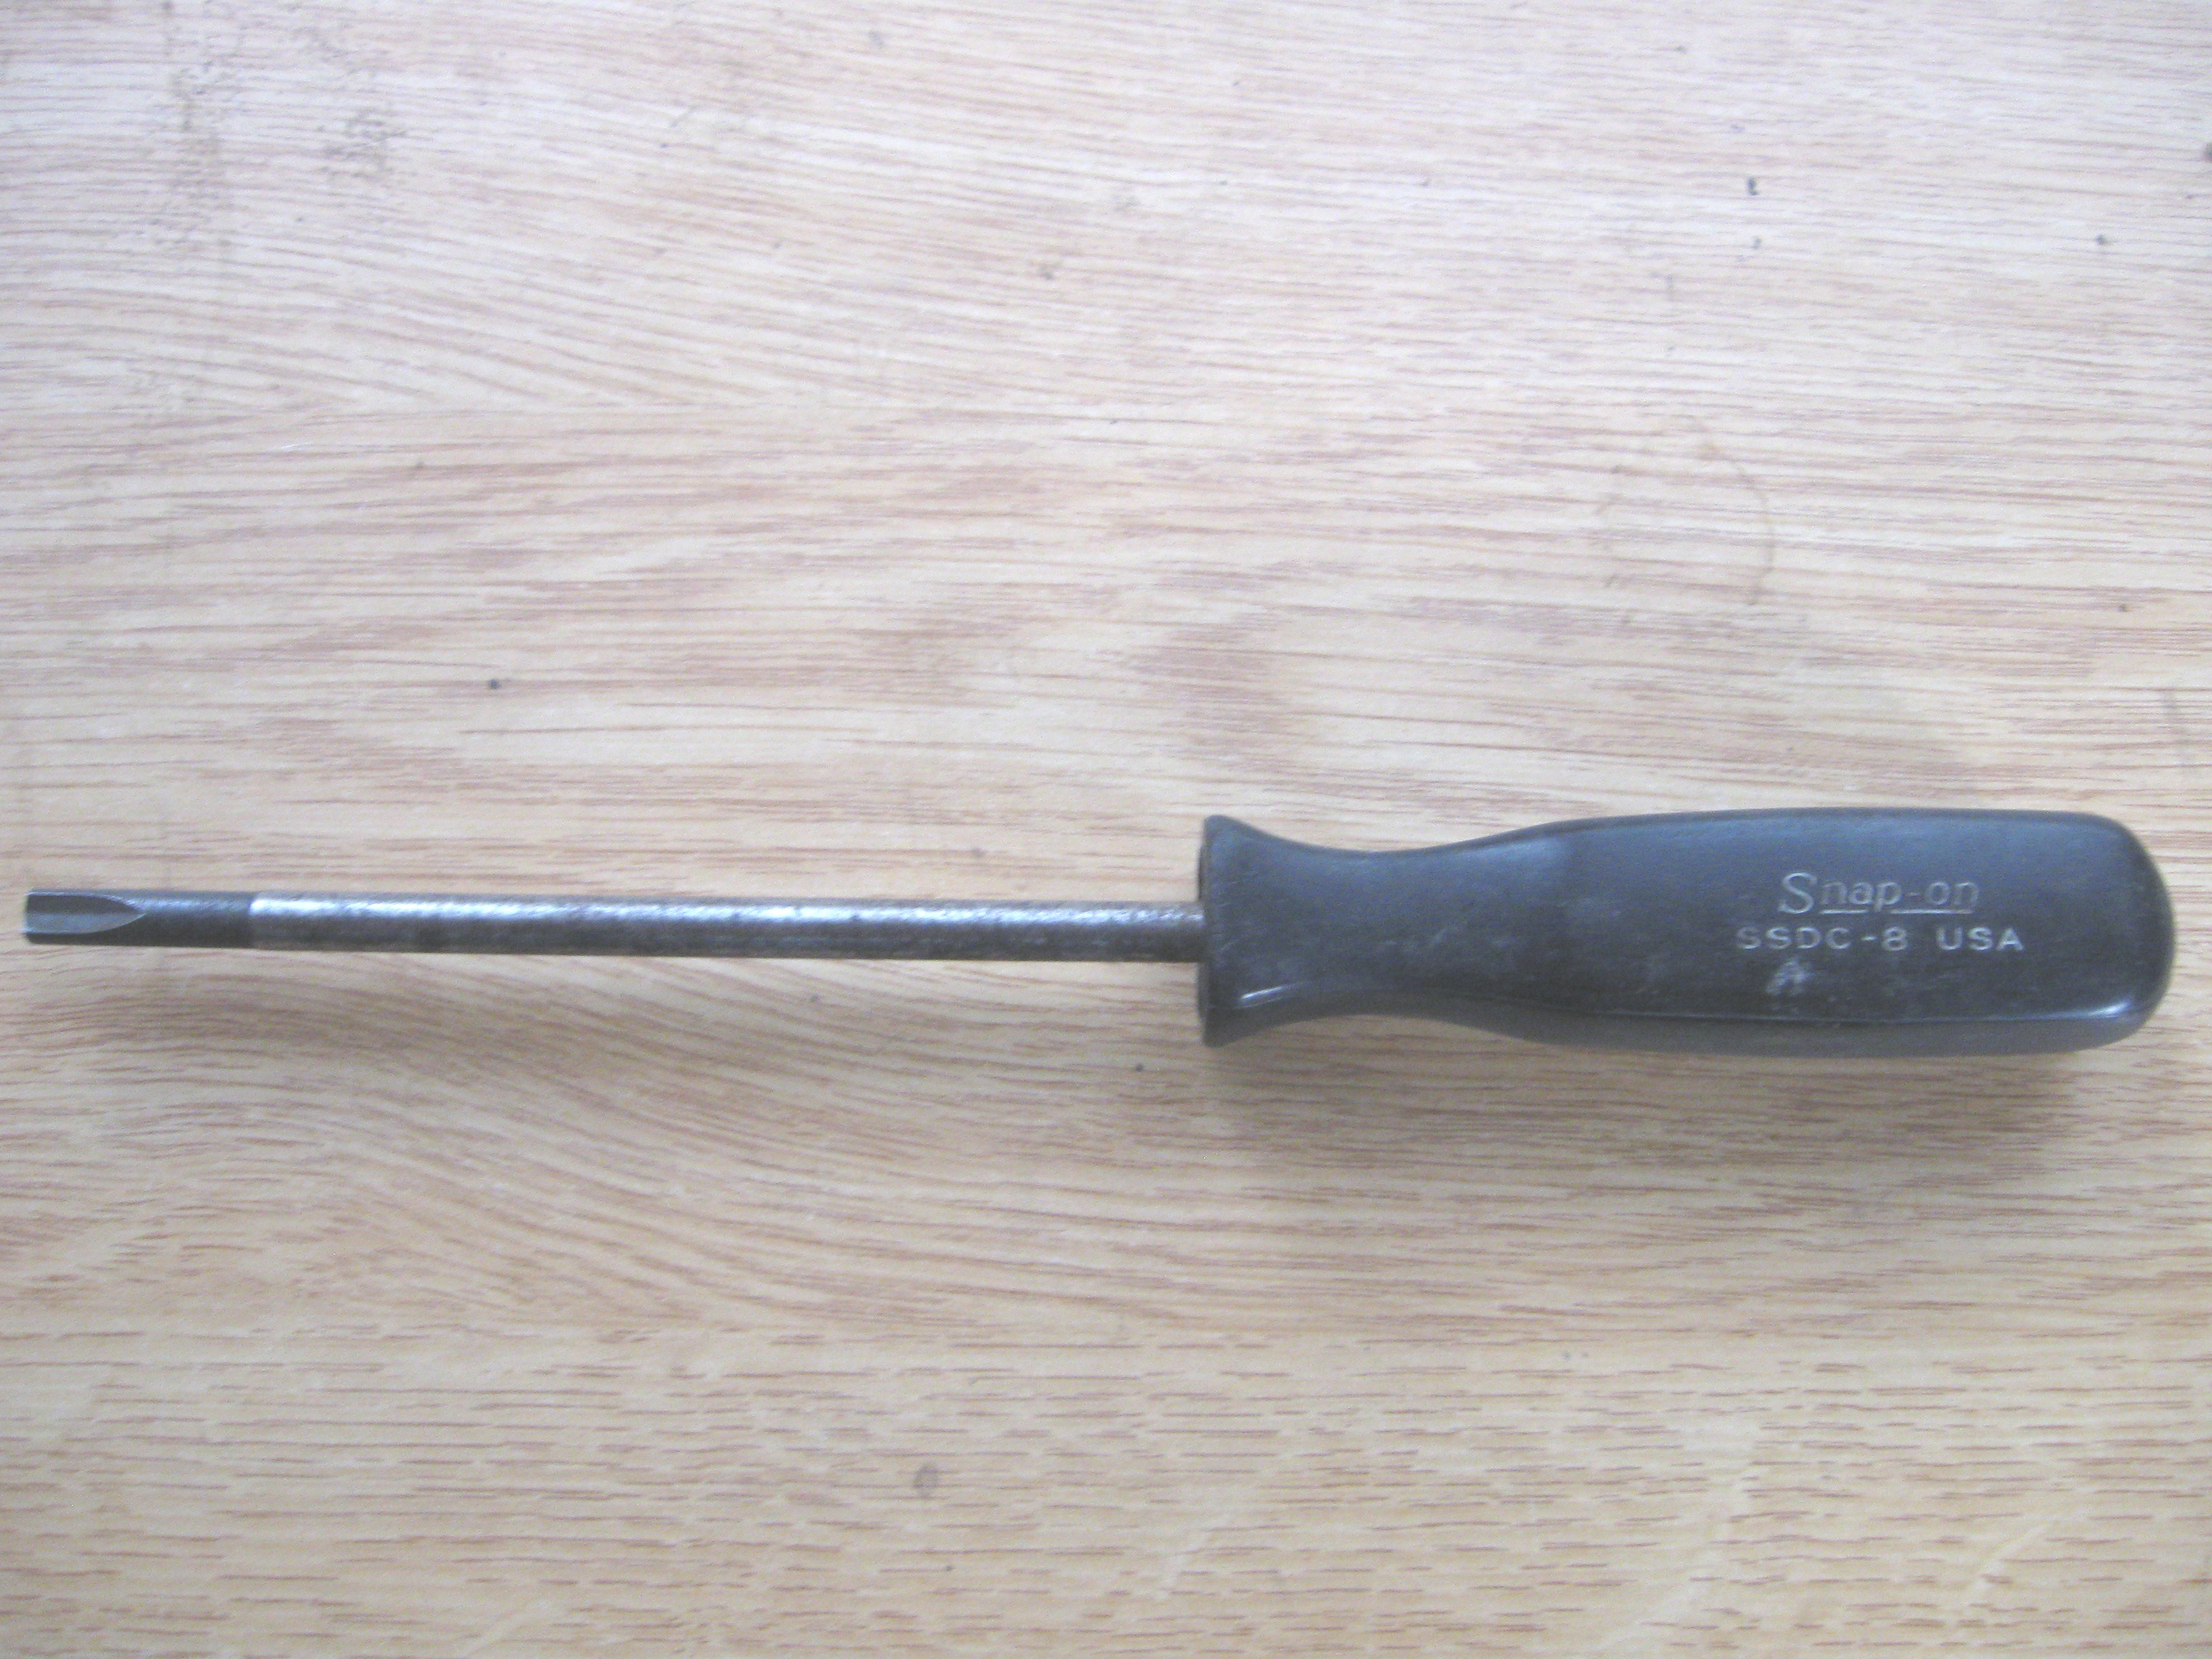 Clutch screwdriver size 8